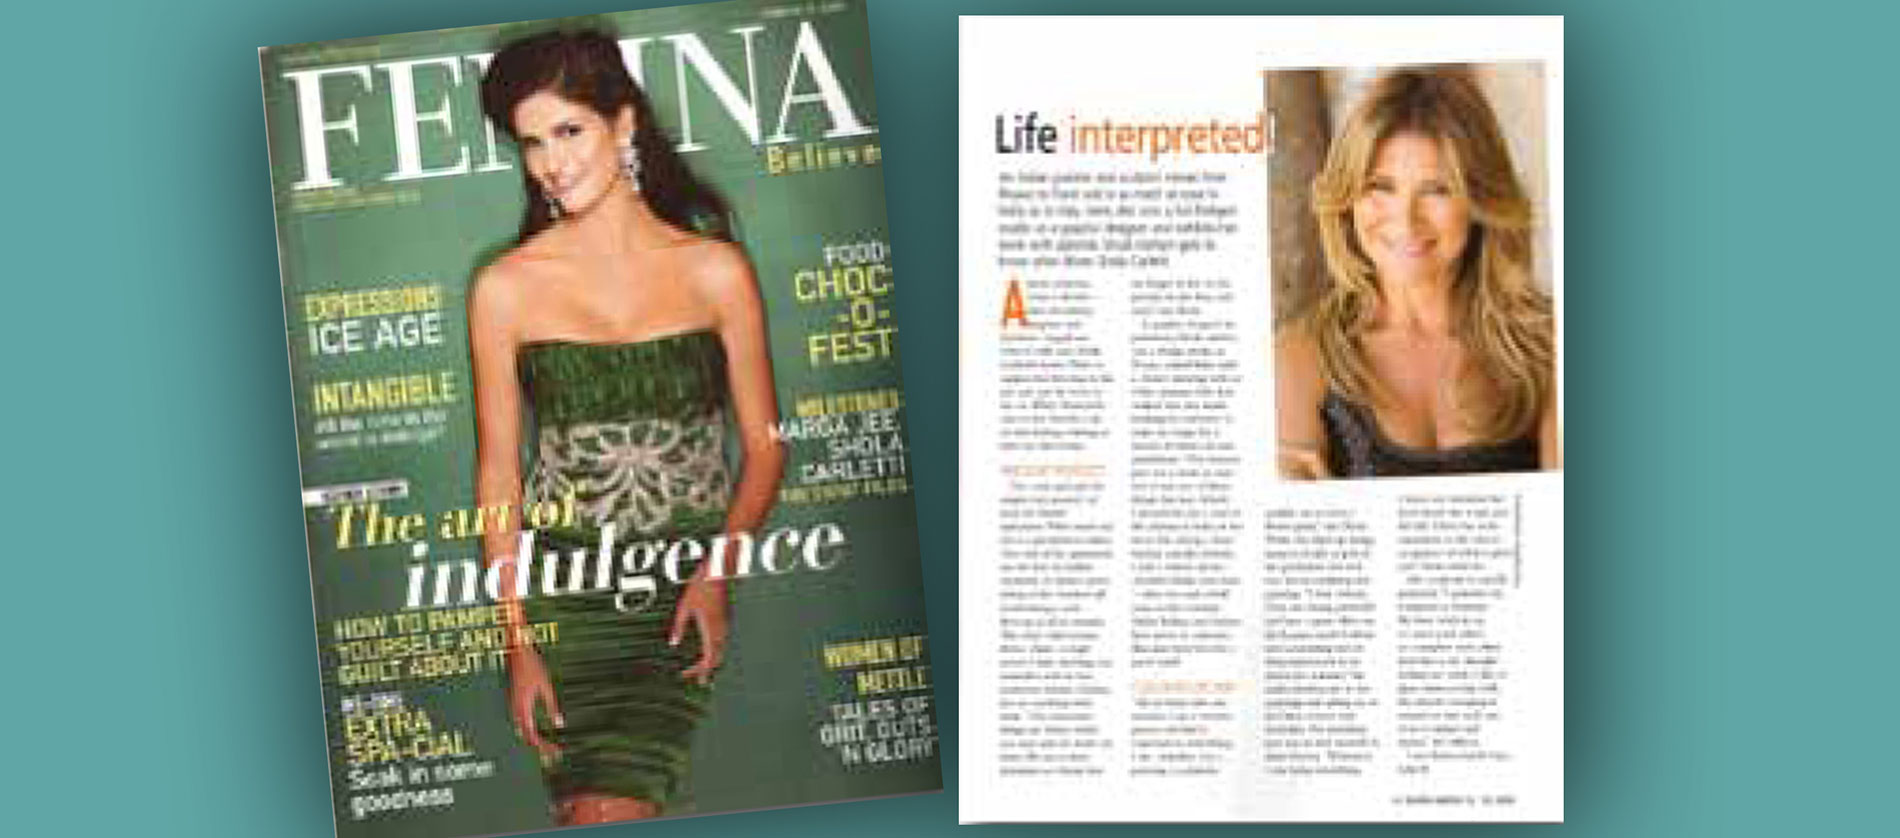 In Magazine, Femina, September 2009